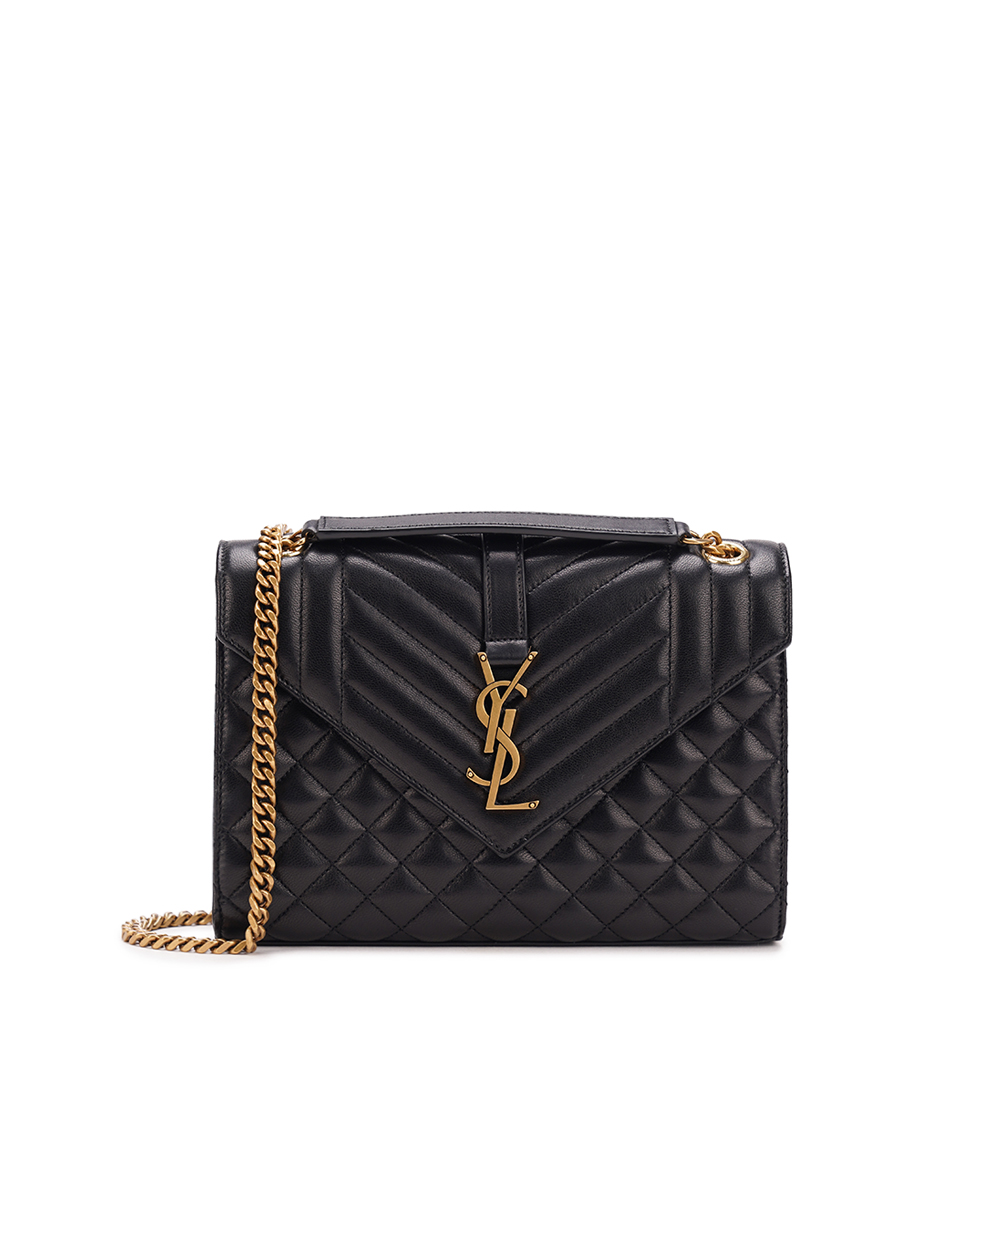 Кожаная сумка Envelope Medium Saint Laurent 600185-AACT7, черный цвет • Купить в интернет-магазине Kameron